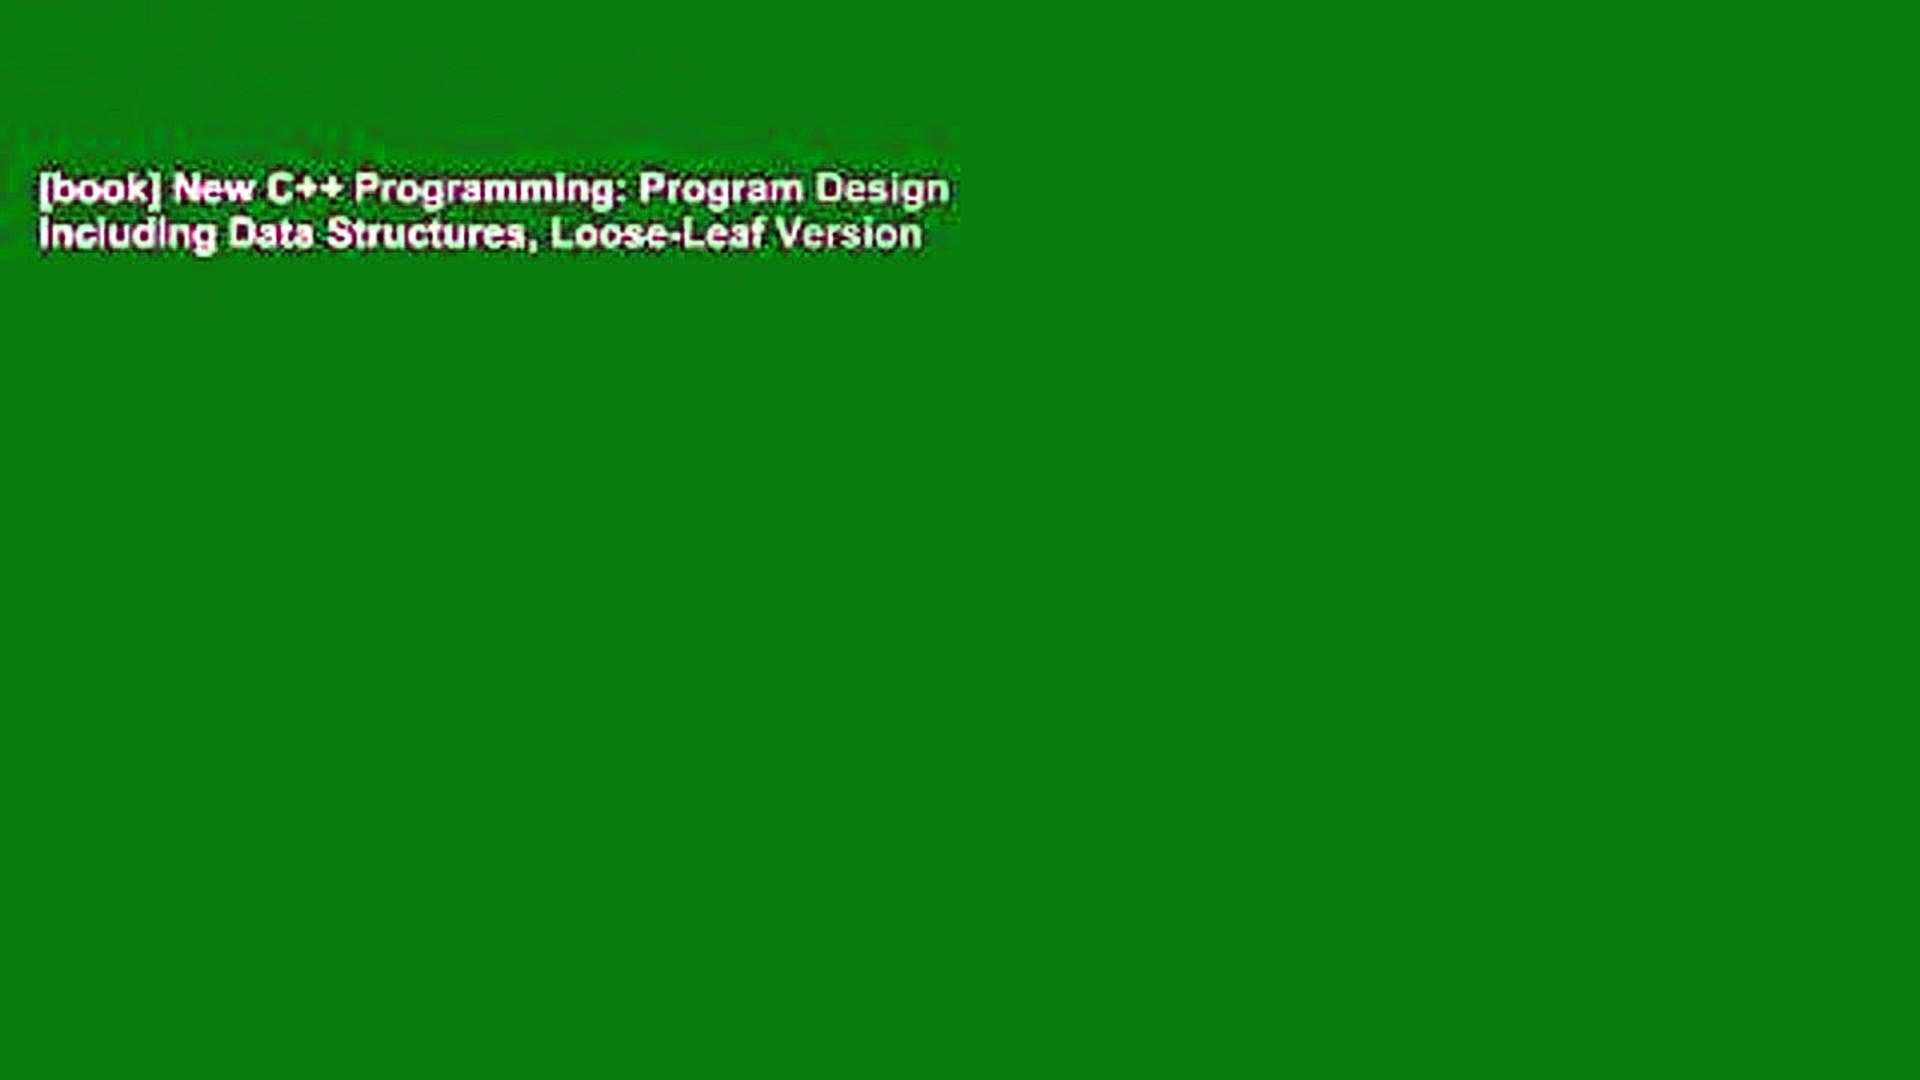 [book] New C++ Programming: Program Design Including Data Structures, Loose-Leaf Version